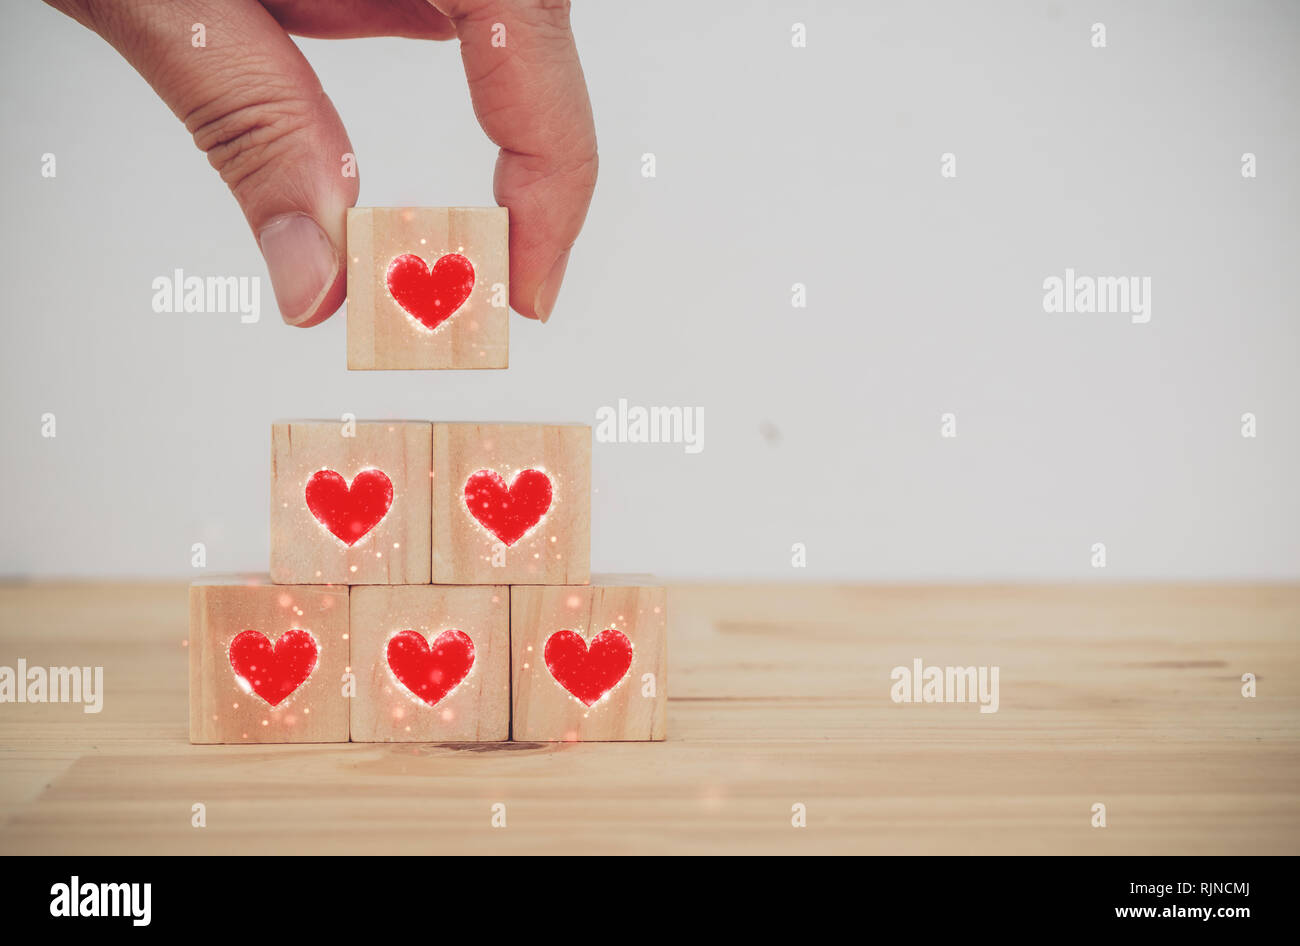 Der Liebe Valentinstag conceptman Hand, die das Herz auf dem Würfel Holz-  die Liebe am Valentinstag zu setzen Stockfotografie - Alamy